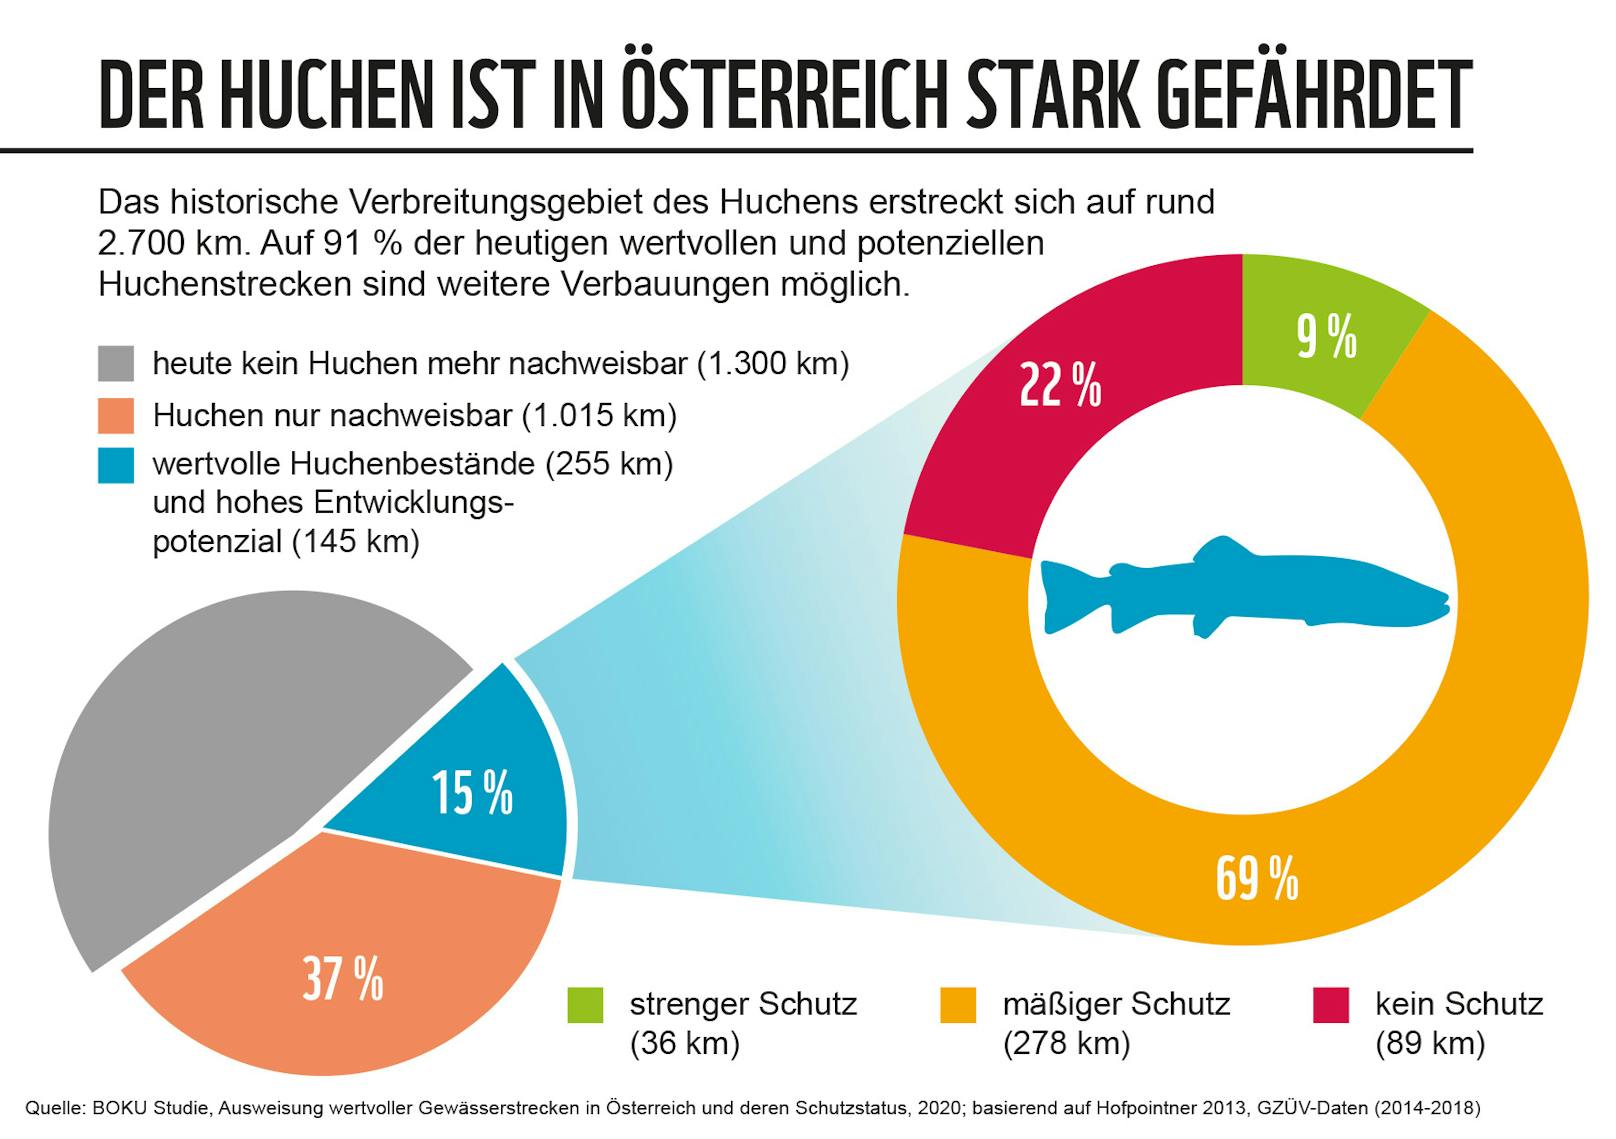 Für den stark gefährdeten Huchen, den größten lachsartigen Fisch Europas, besteht die reale Gefahr, dass er in den nächsten 20 Jahren in Österreich ausstirbt.